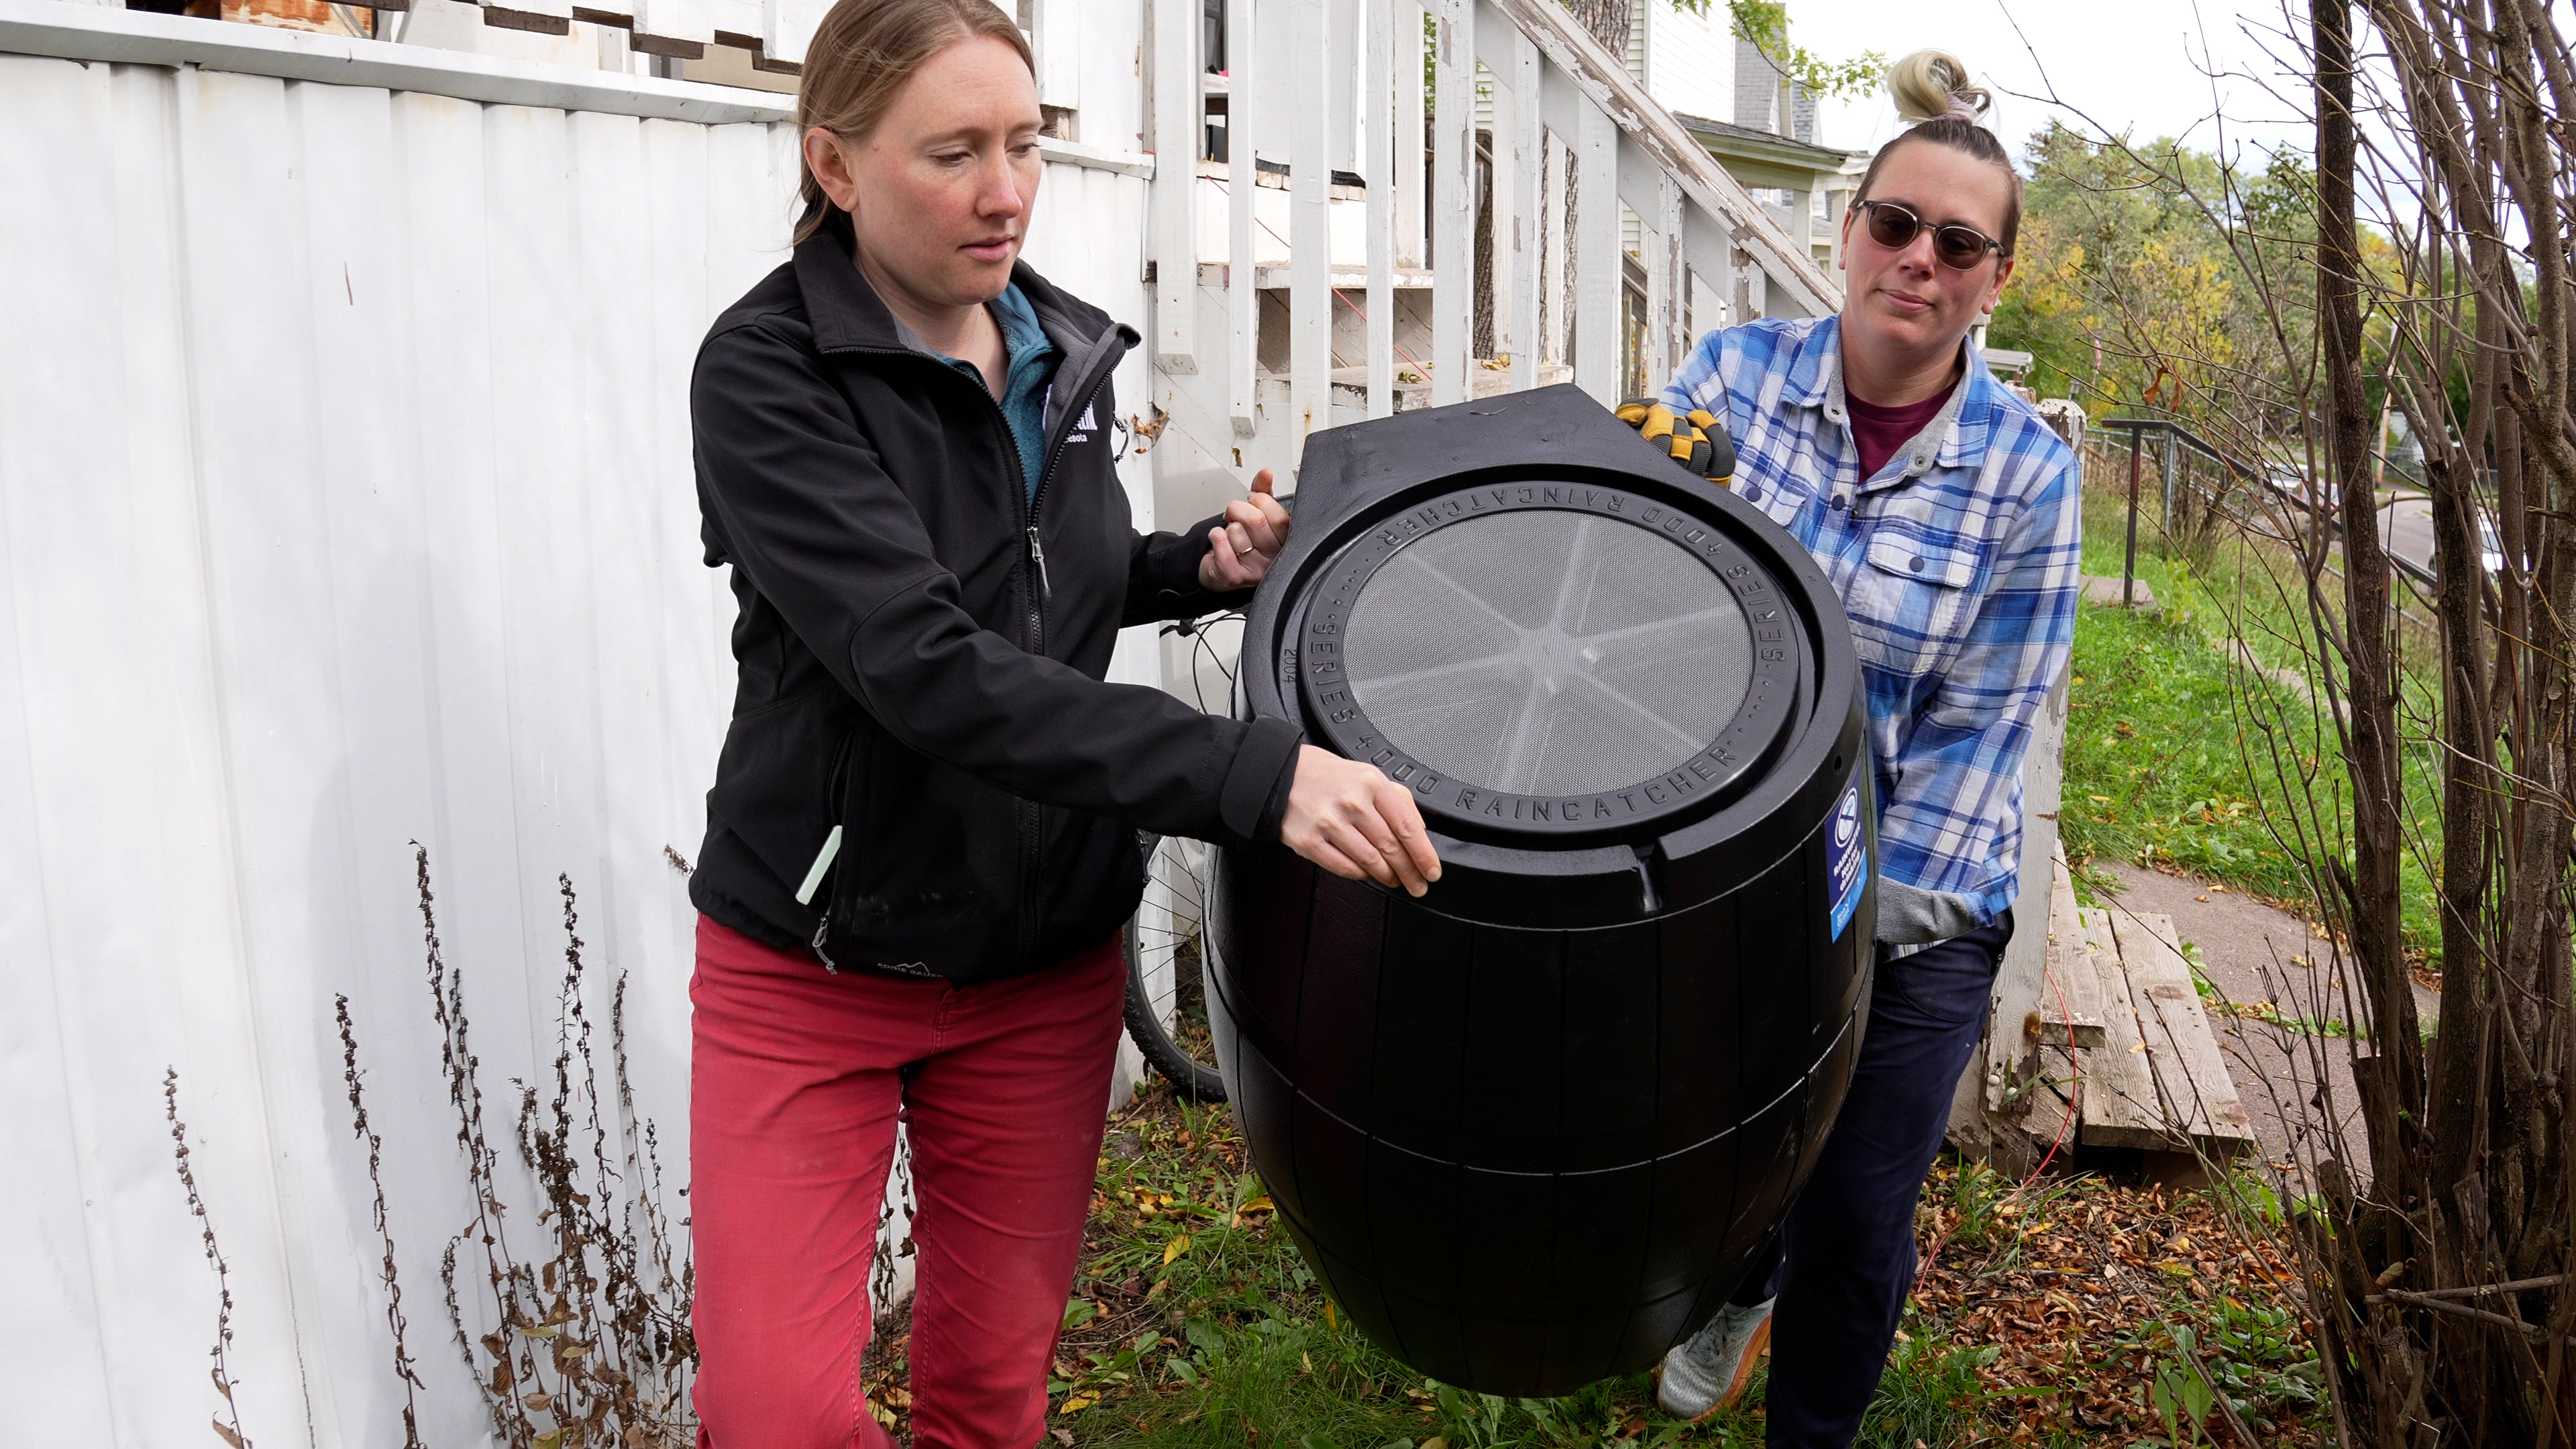 Two women carry a rain barrel alongside a residence.